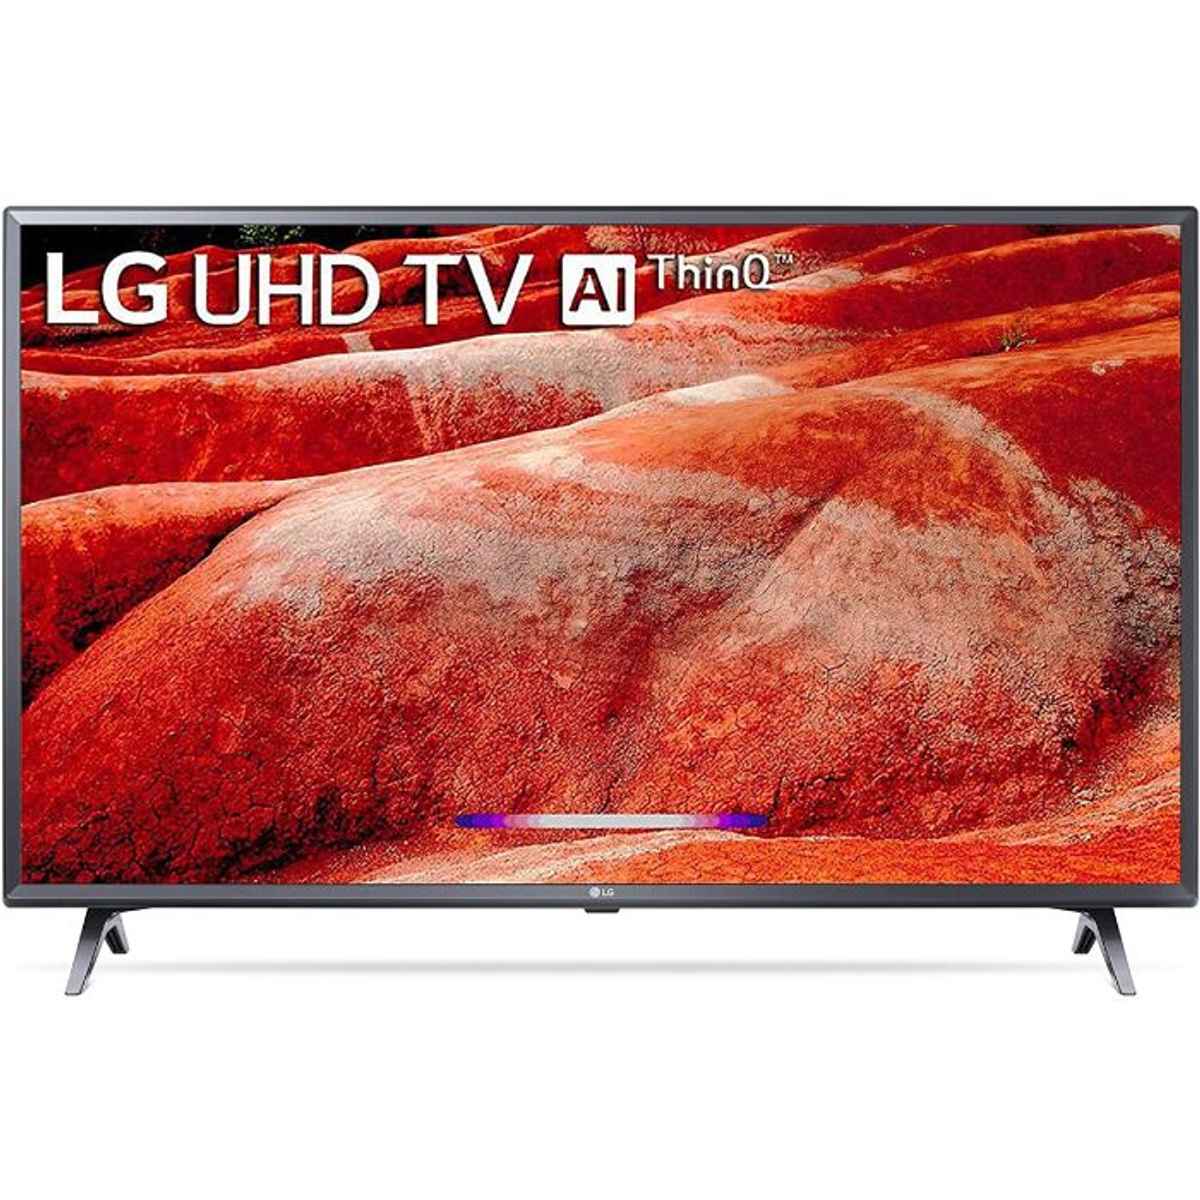 LG 43 inches 4K Ultra HD Smart LED TV (43UM7780PTA)